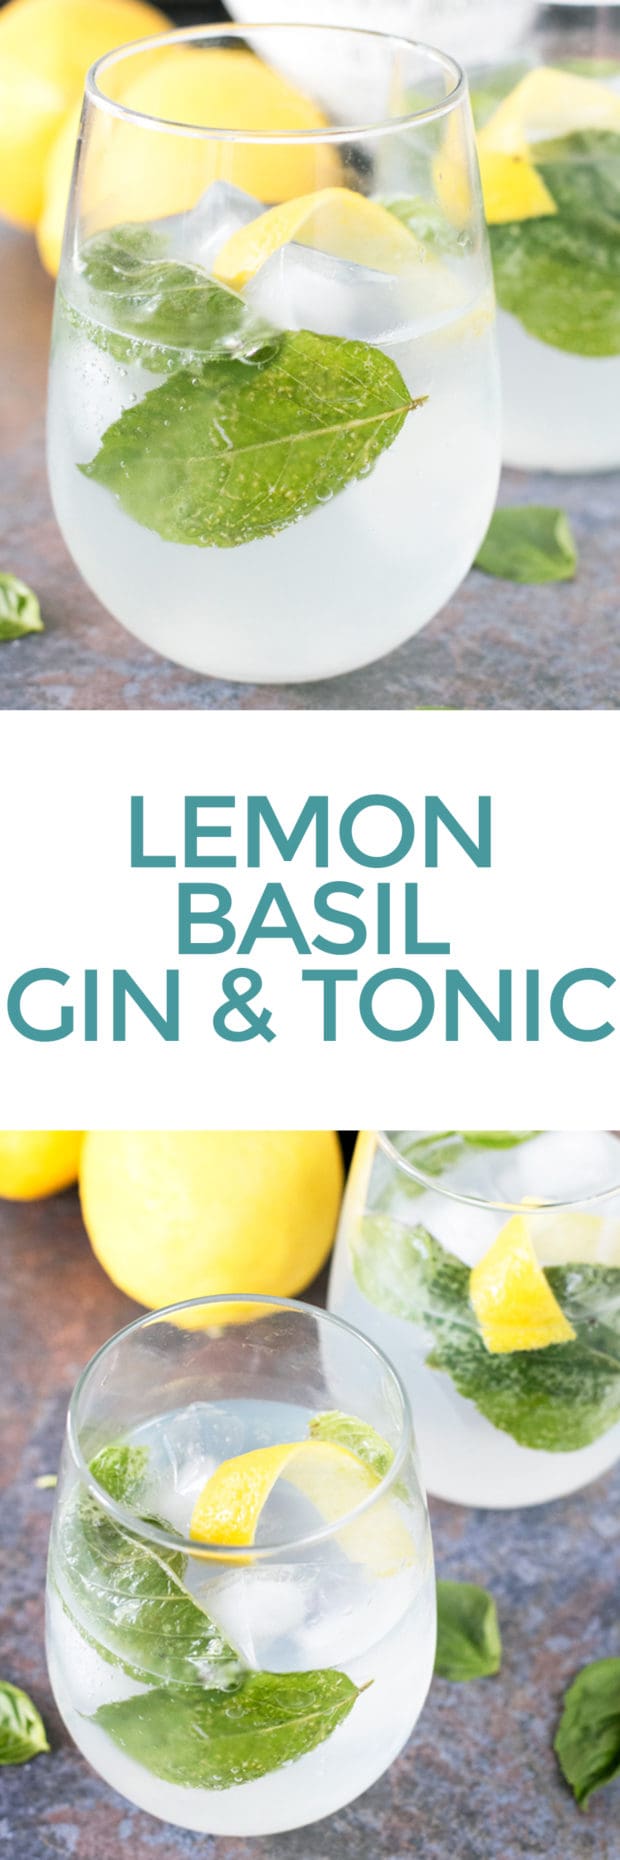 Lemon Basil Gin & Tonic | cakenknife.com